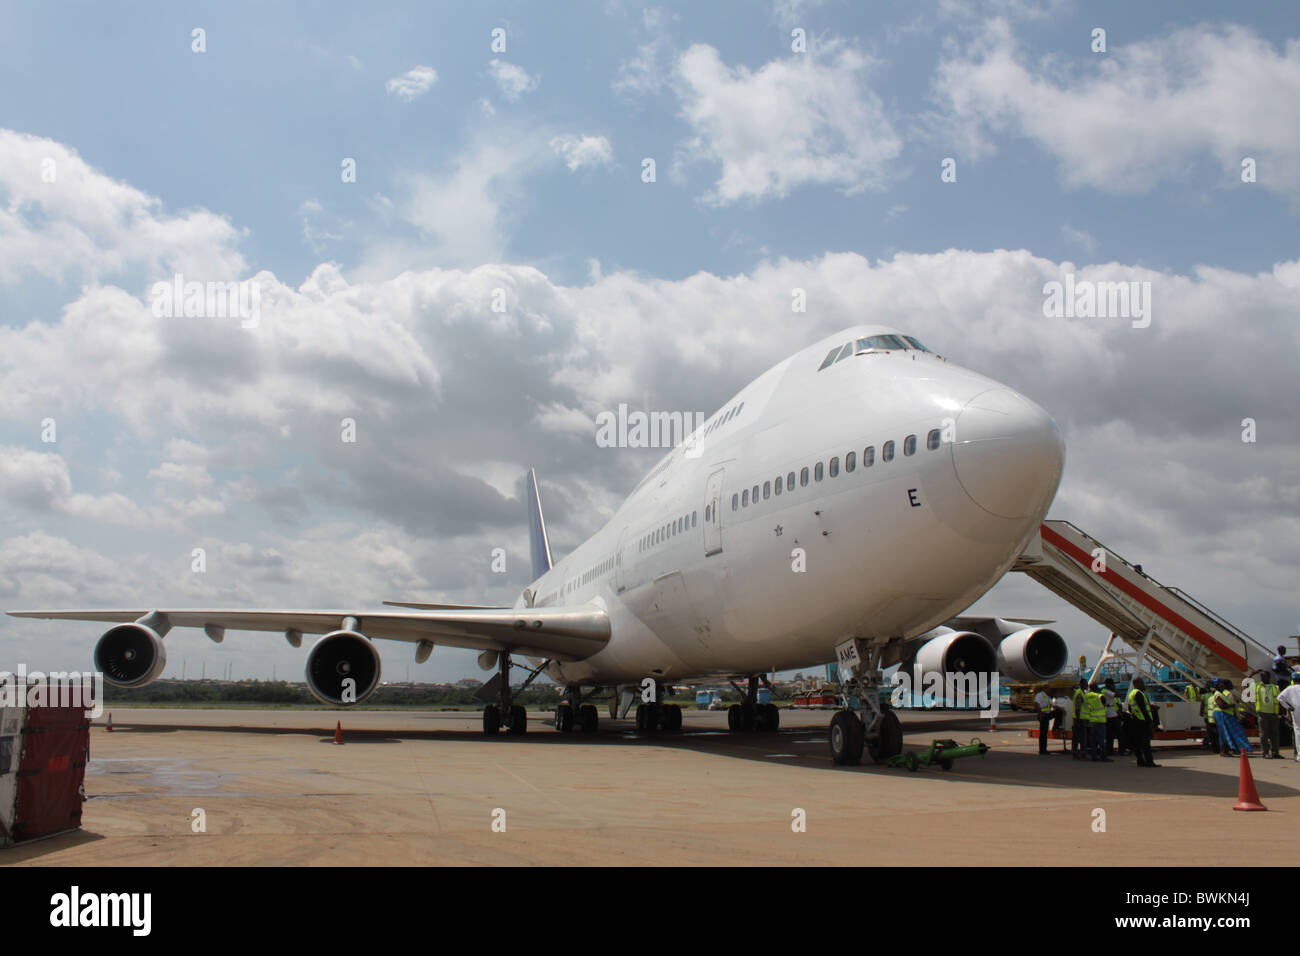 Un avion Boeing en stationnement (747) type à l'aéroport international Murtala Muhammed de Lagos, au secteur du fret. Banque D'Images